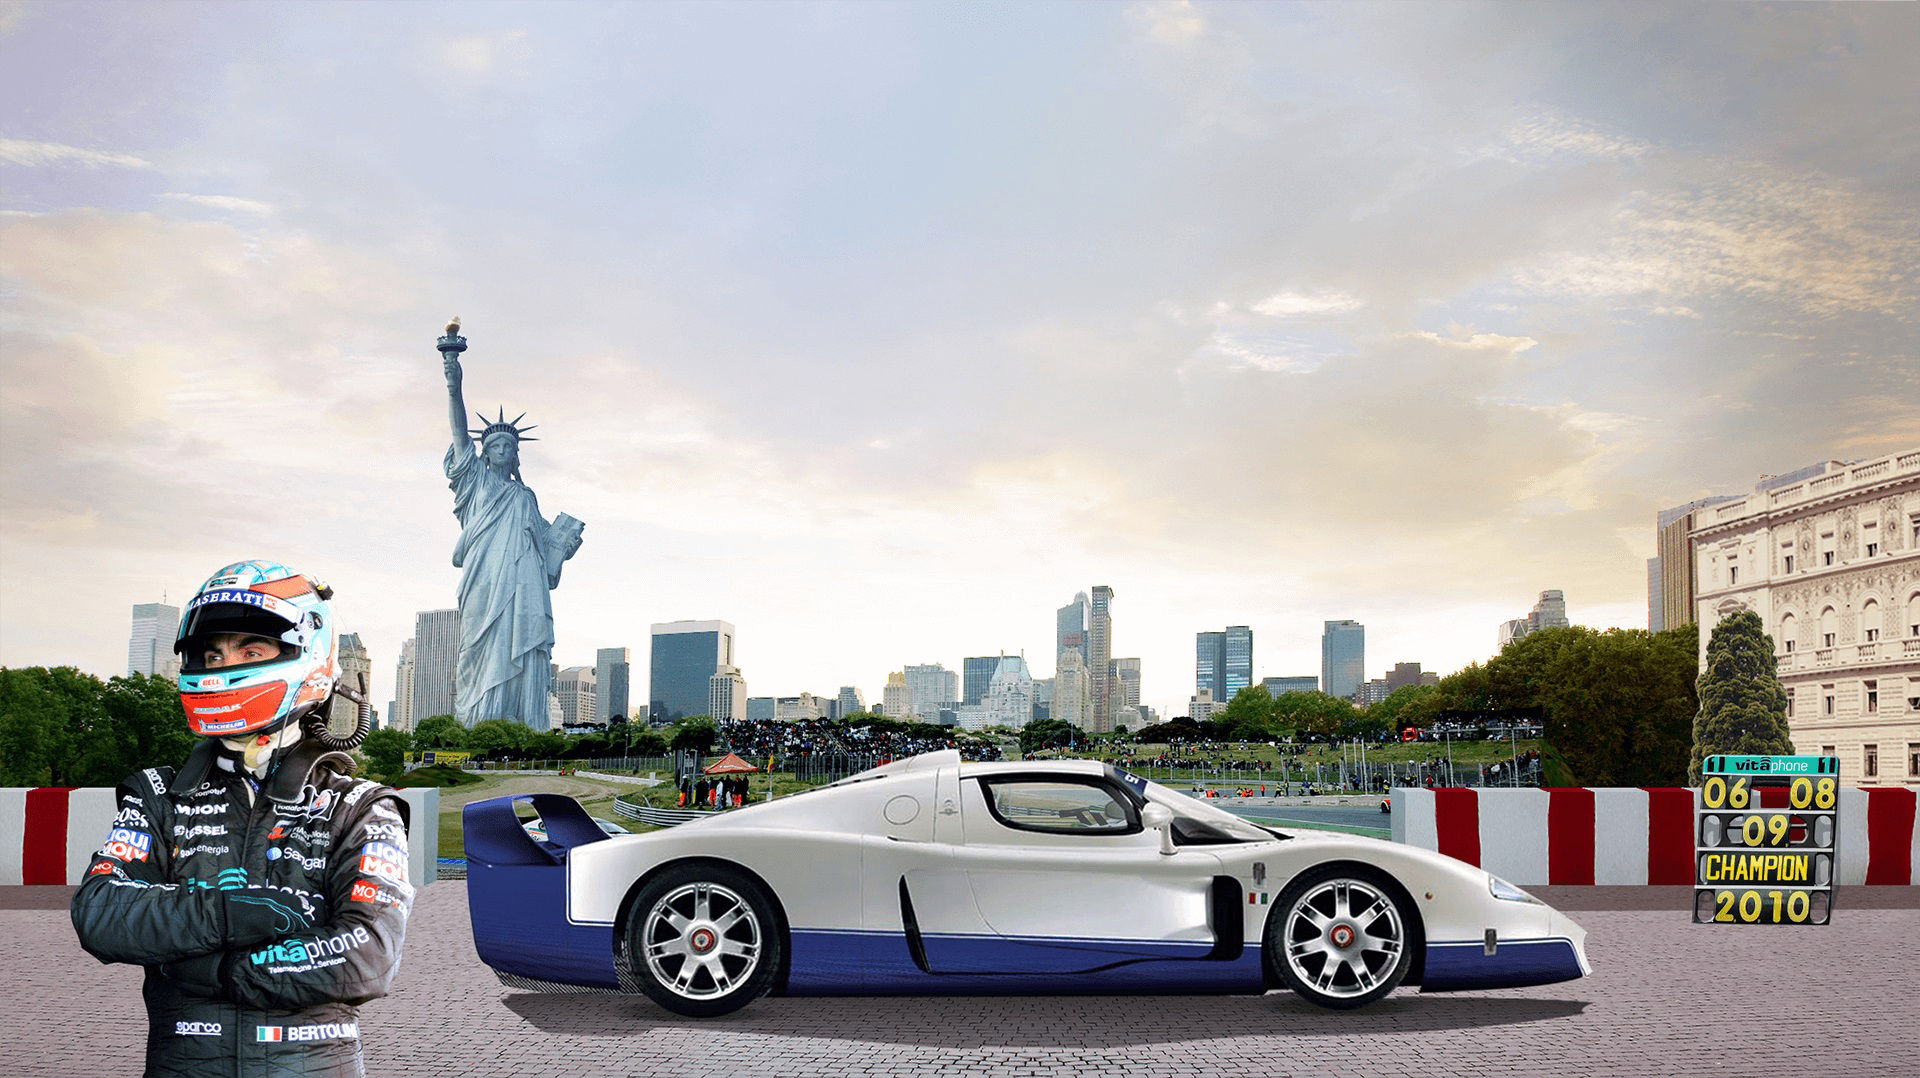 Storia di Maserati - 2000: Auto da corsa Maserati a New York